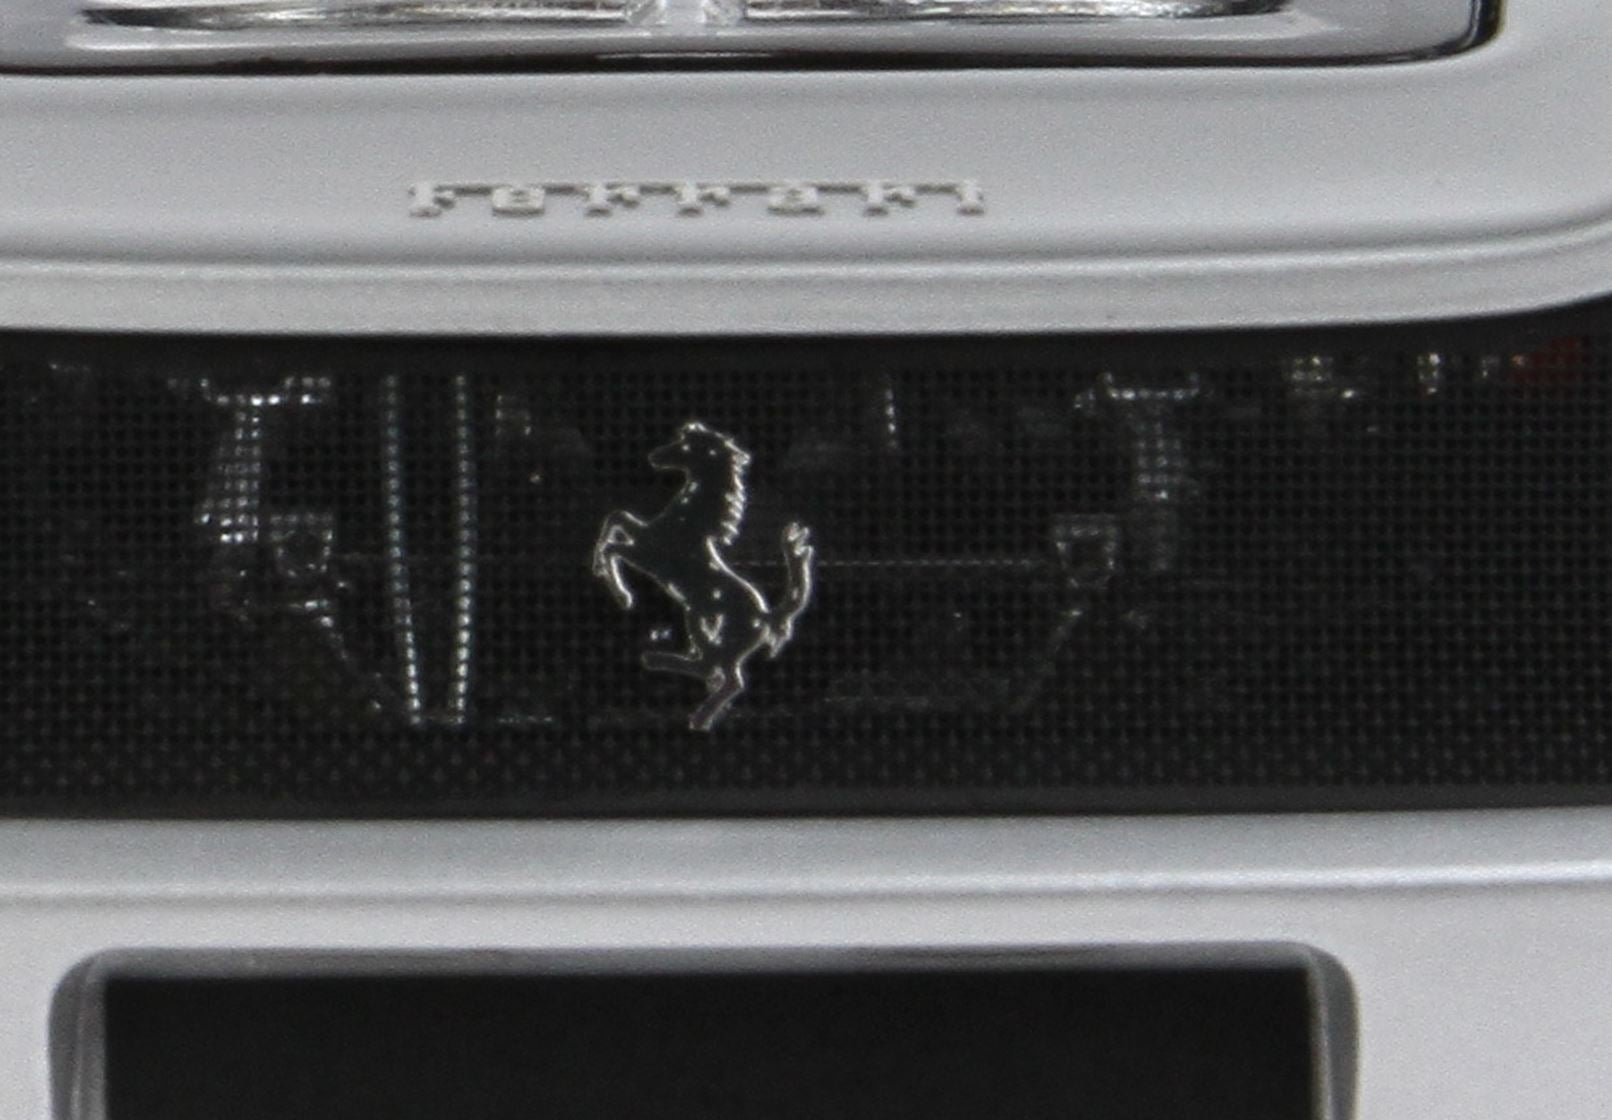 BBR Ferrari F50 1:18 scale Metalic Titanium Grey